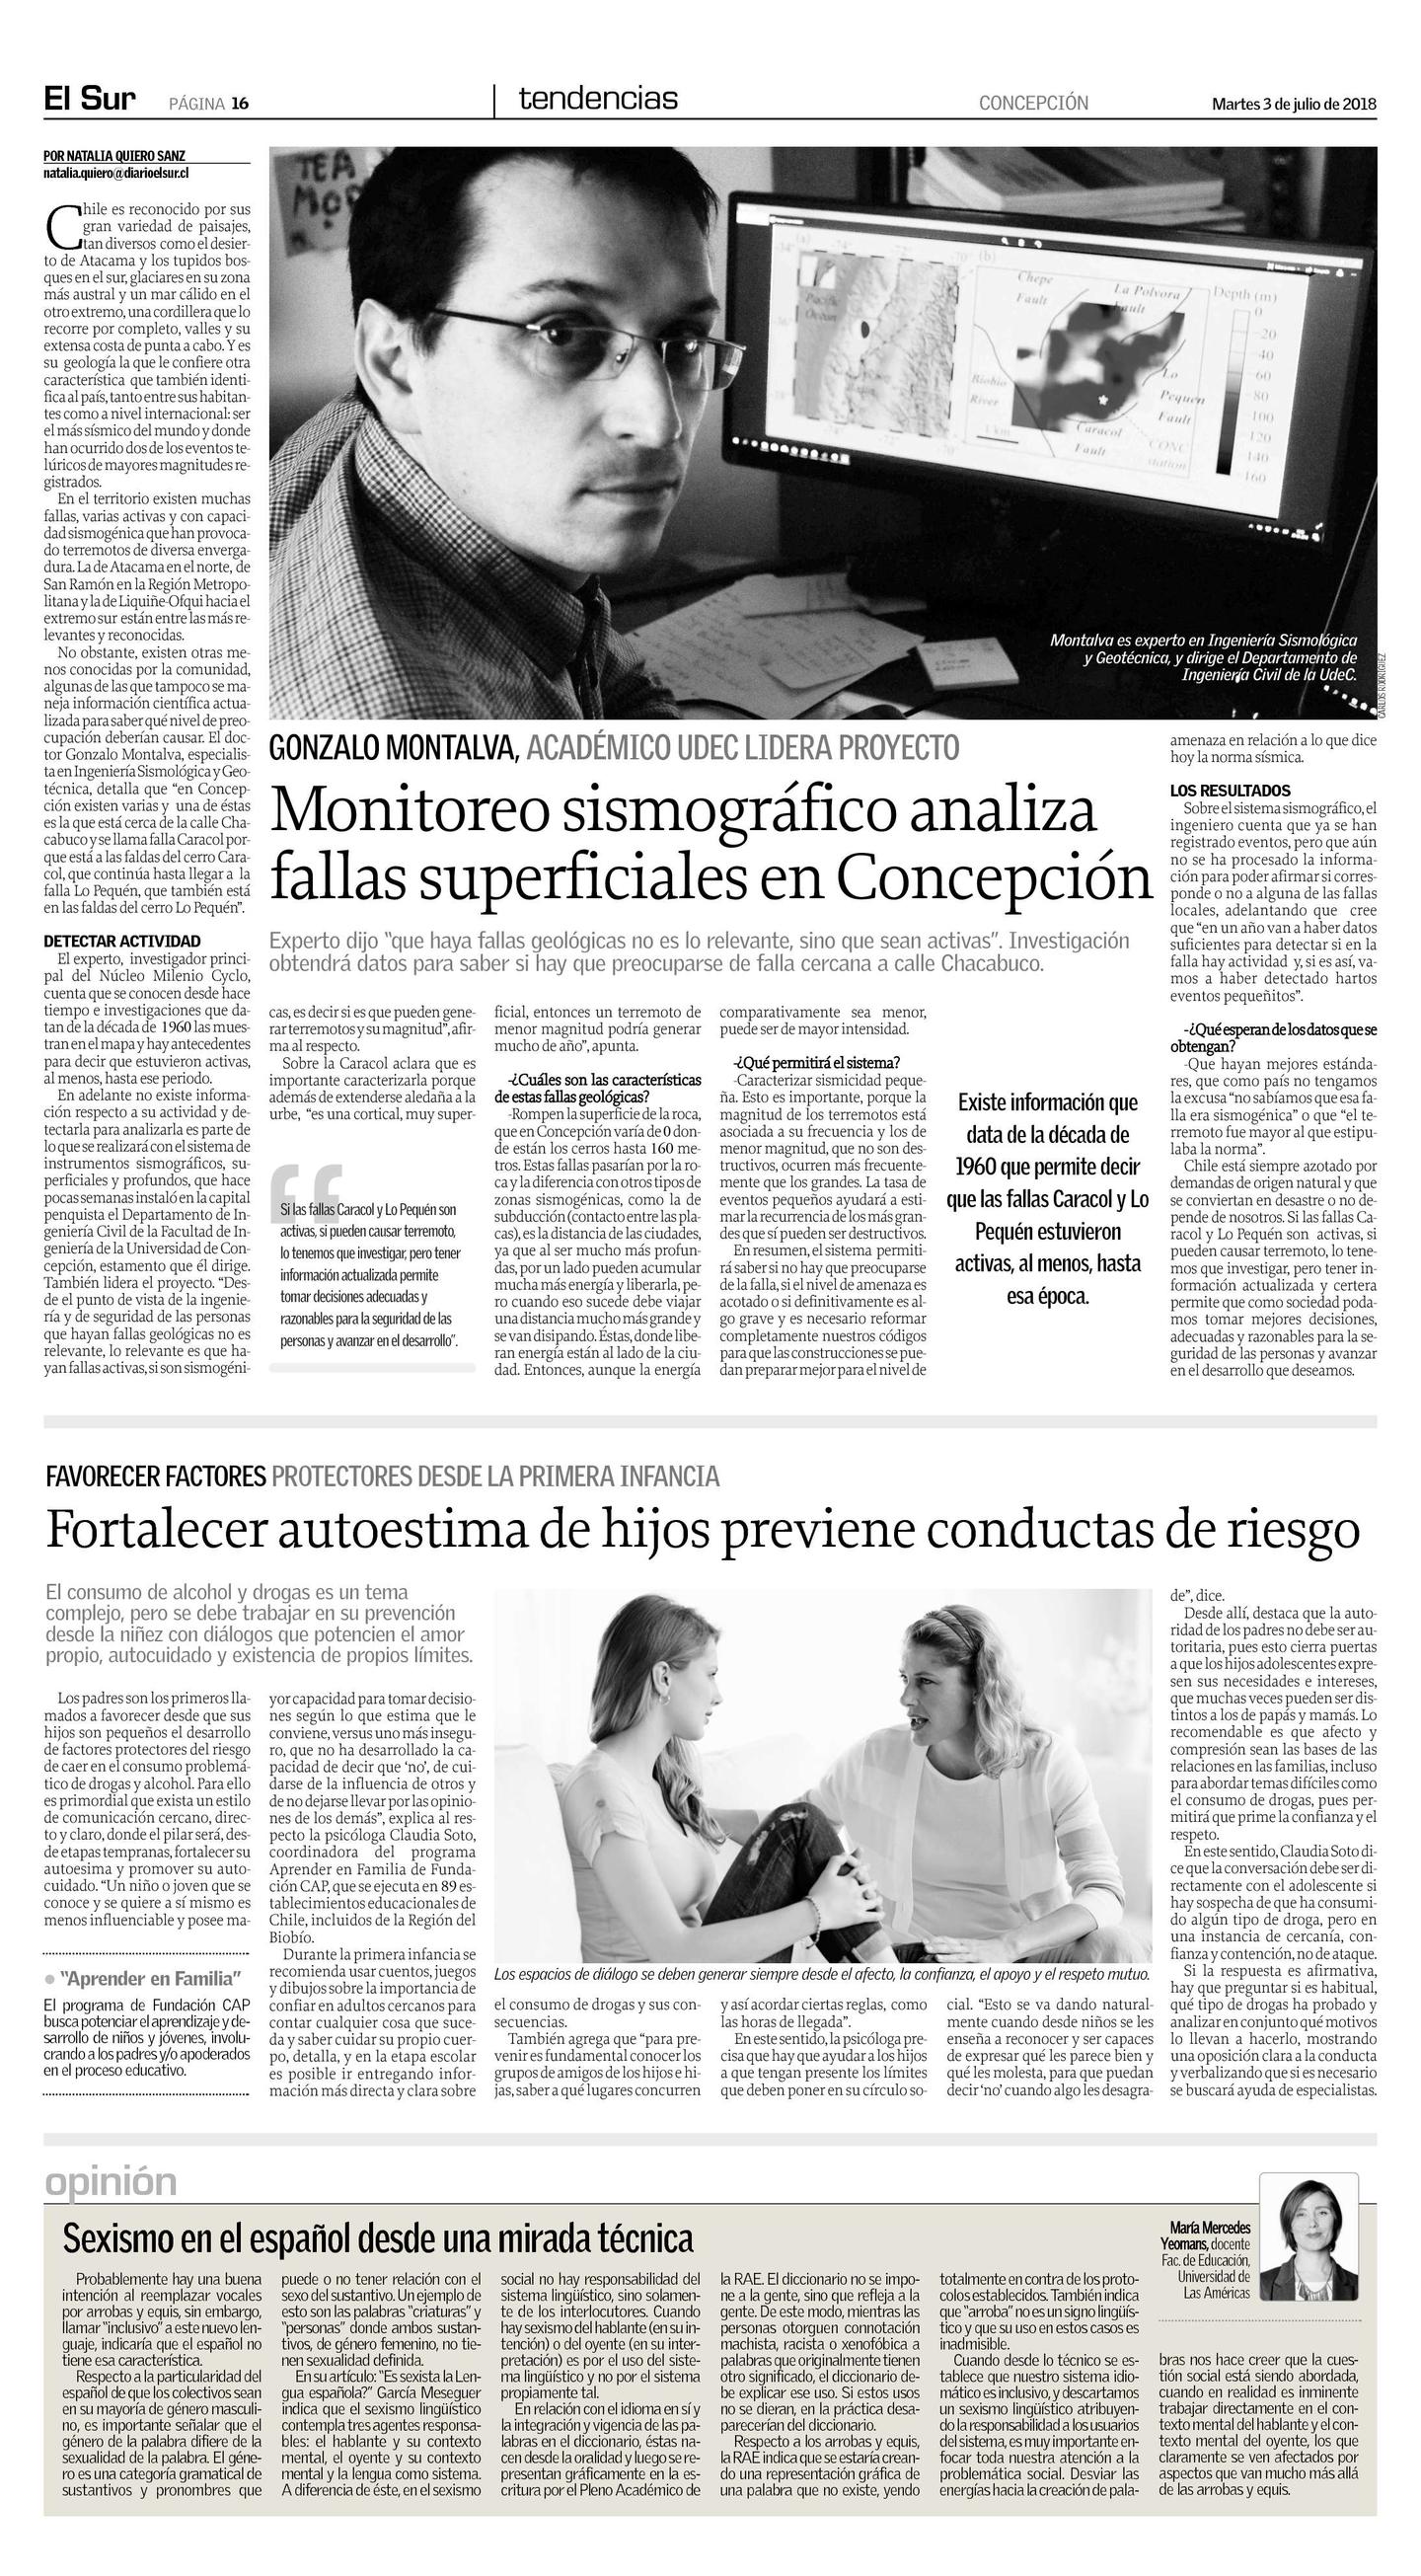 Diario El Sur_ Concepción,Tendencias, martes 3 de julio de 2018